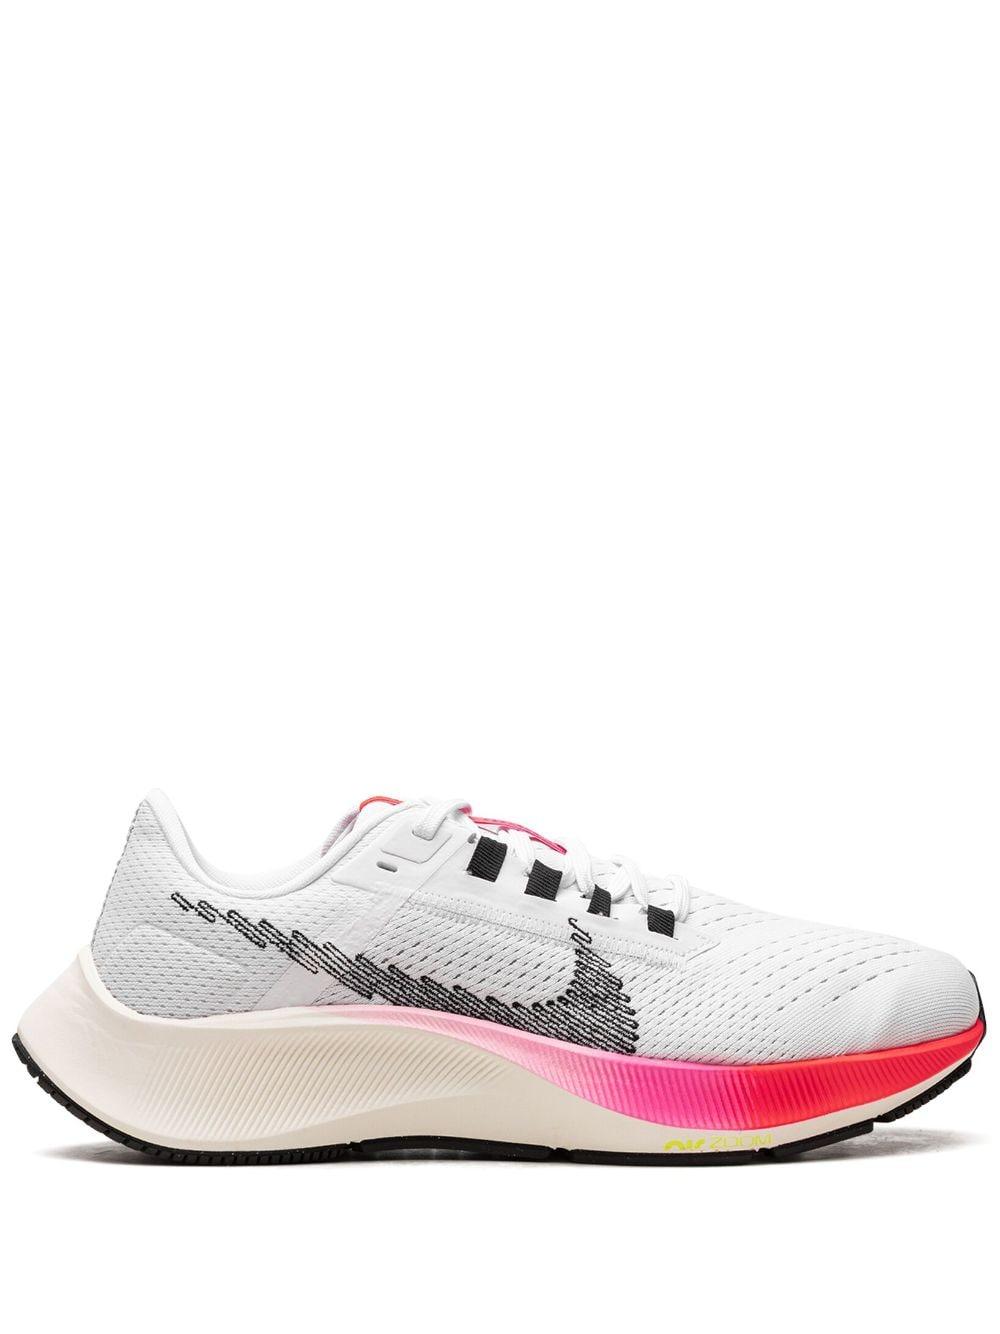 Minefelt at opfinde røg Nike Air Zoom Pegasus 38 "rawdacious" Sneakers in Pink | Lyst